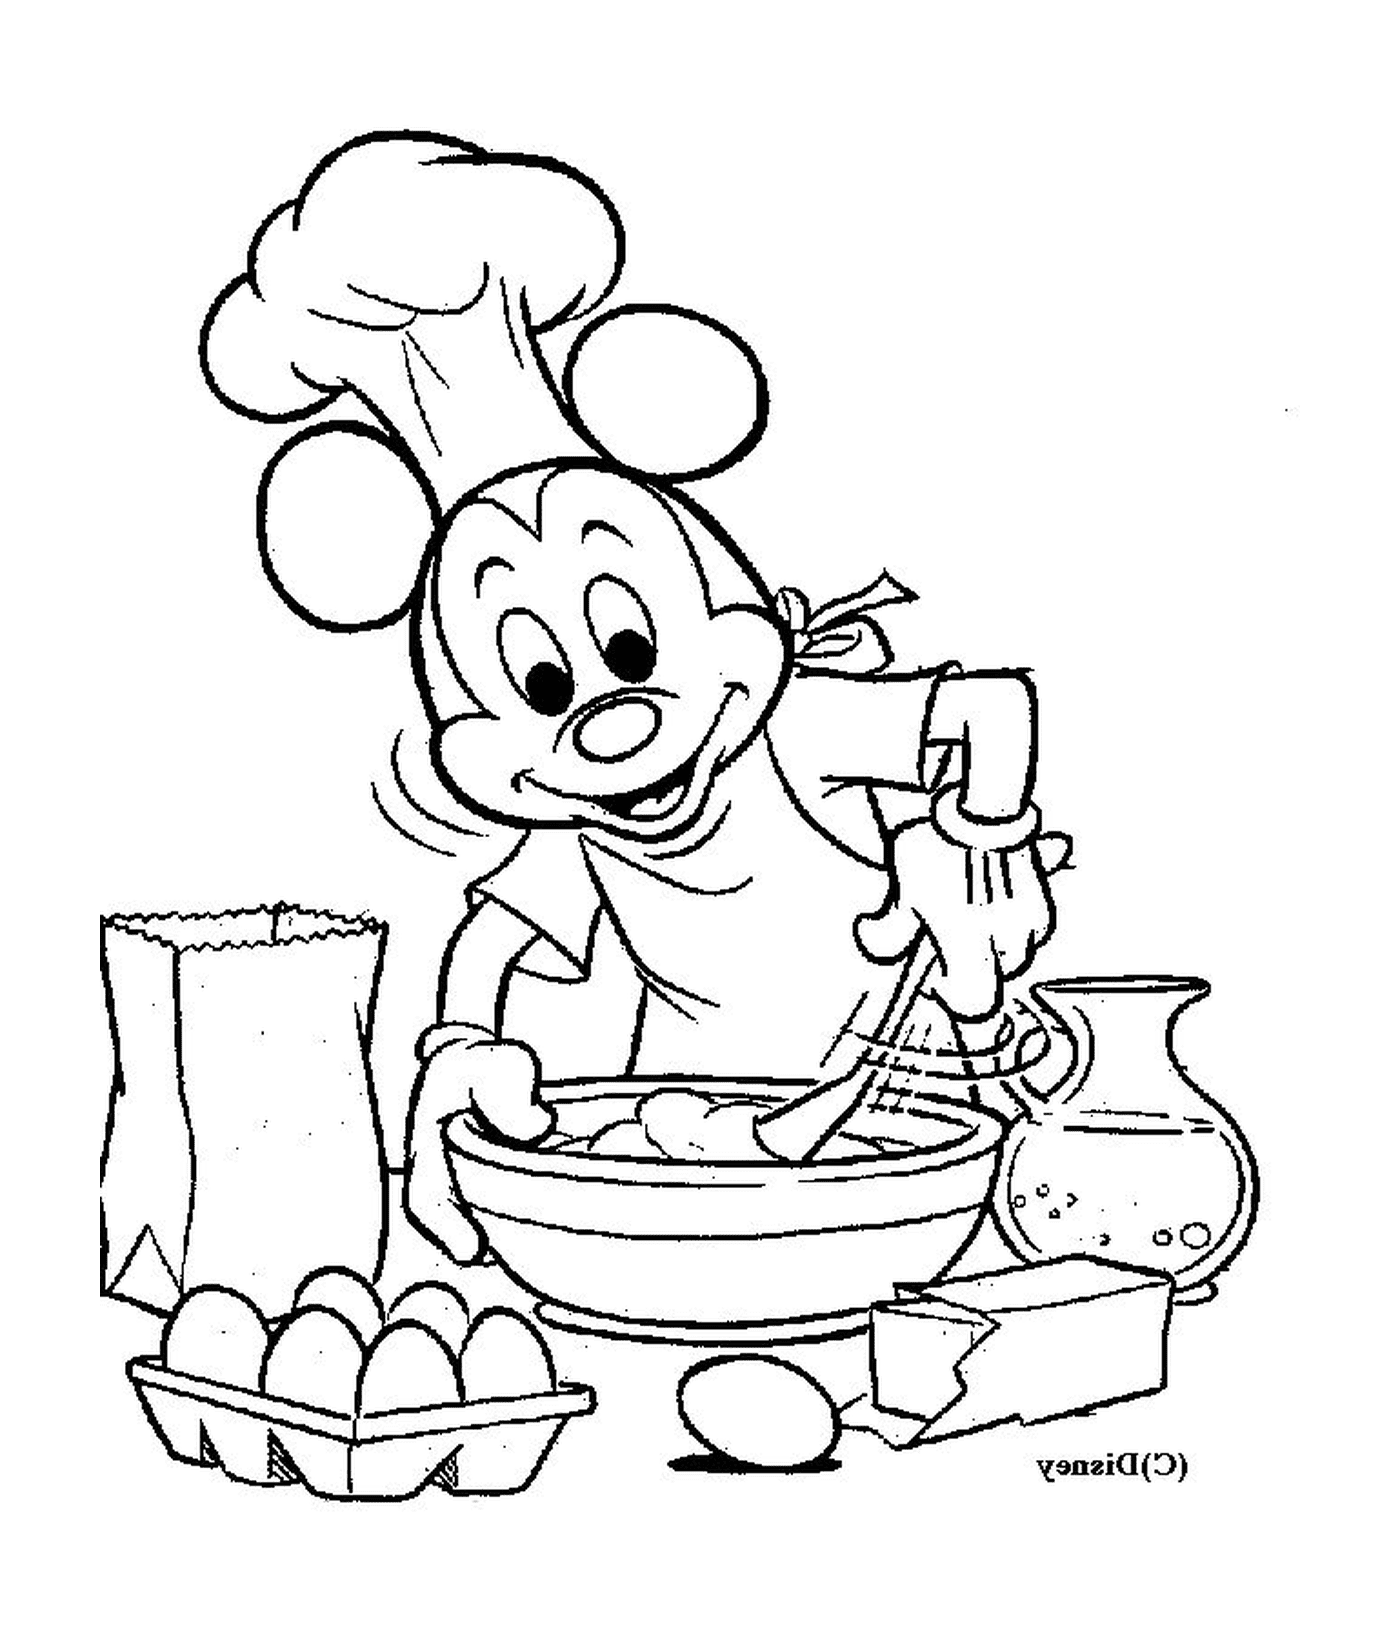  Микки Маус, шеф-повар, смешивающий миску с едой 